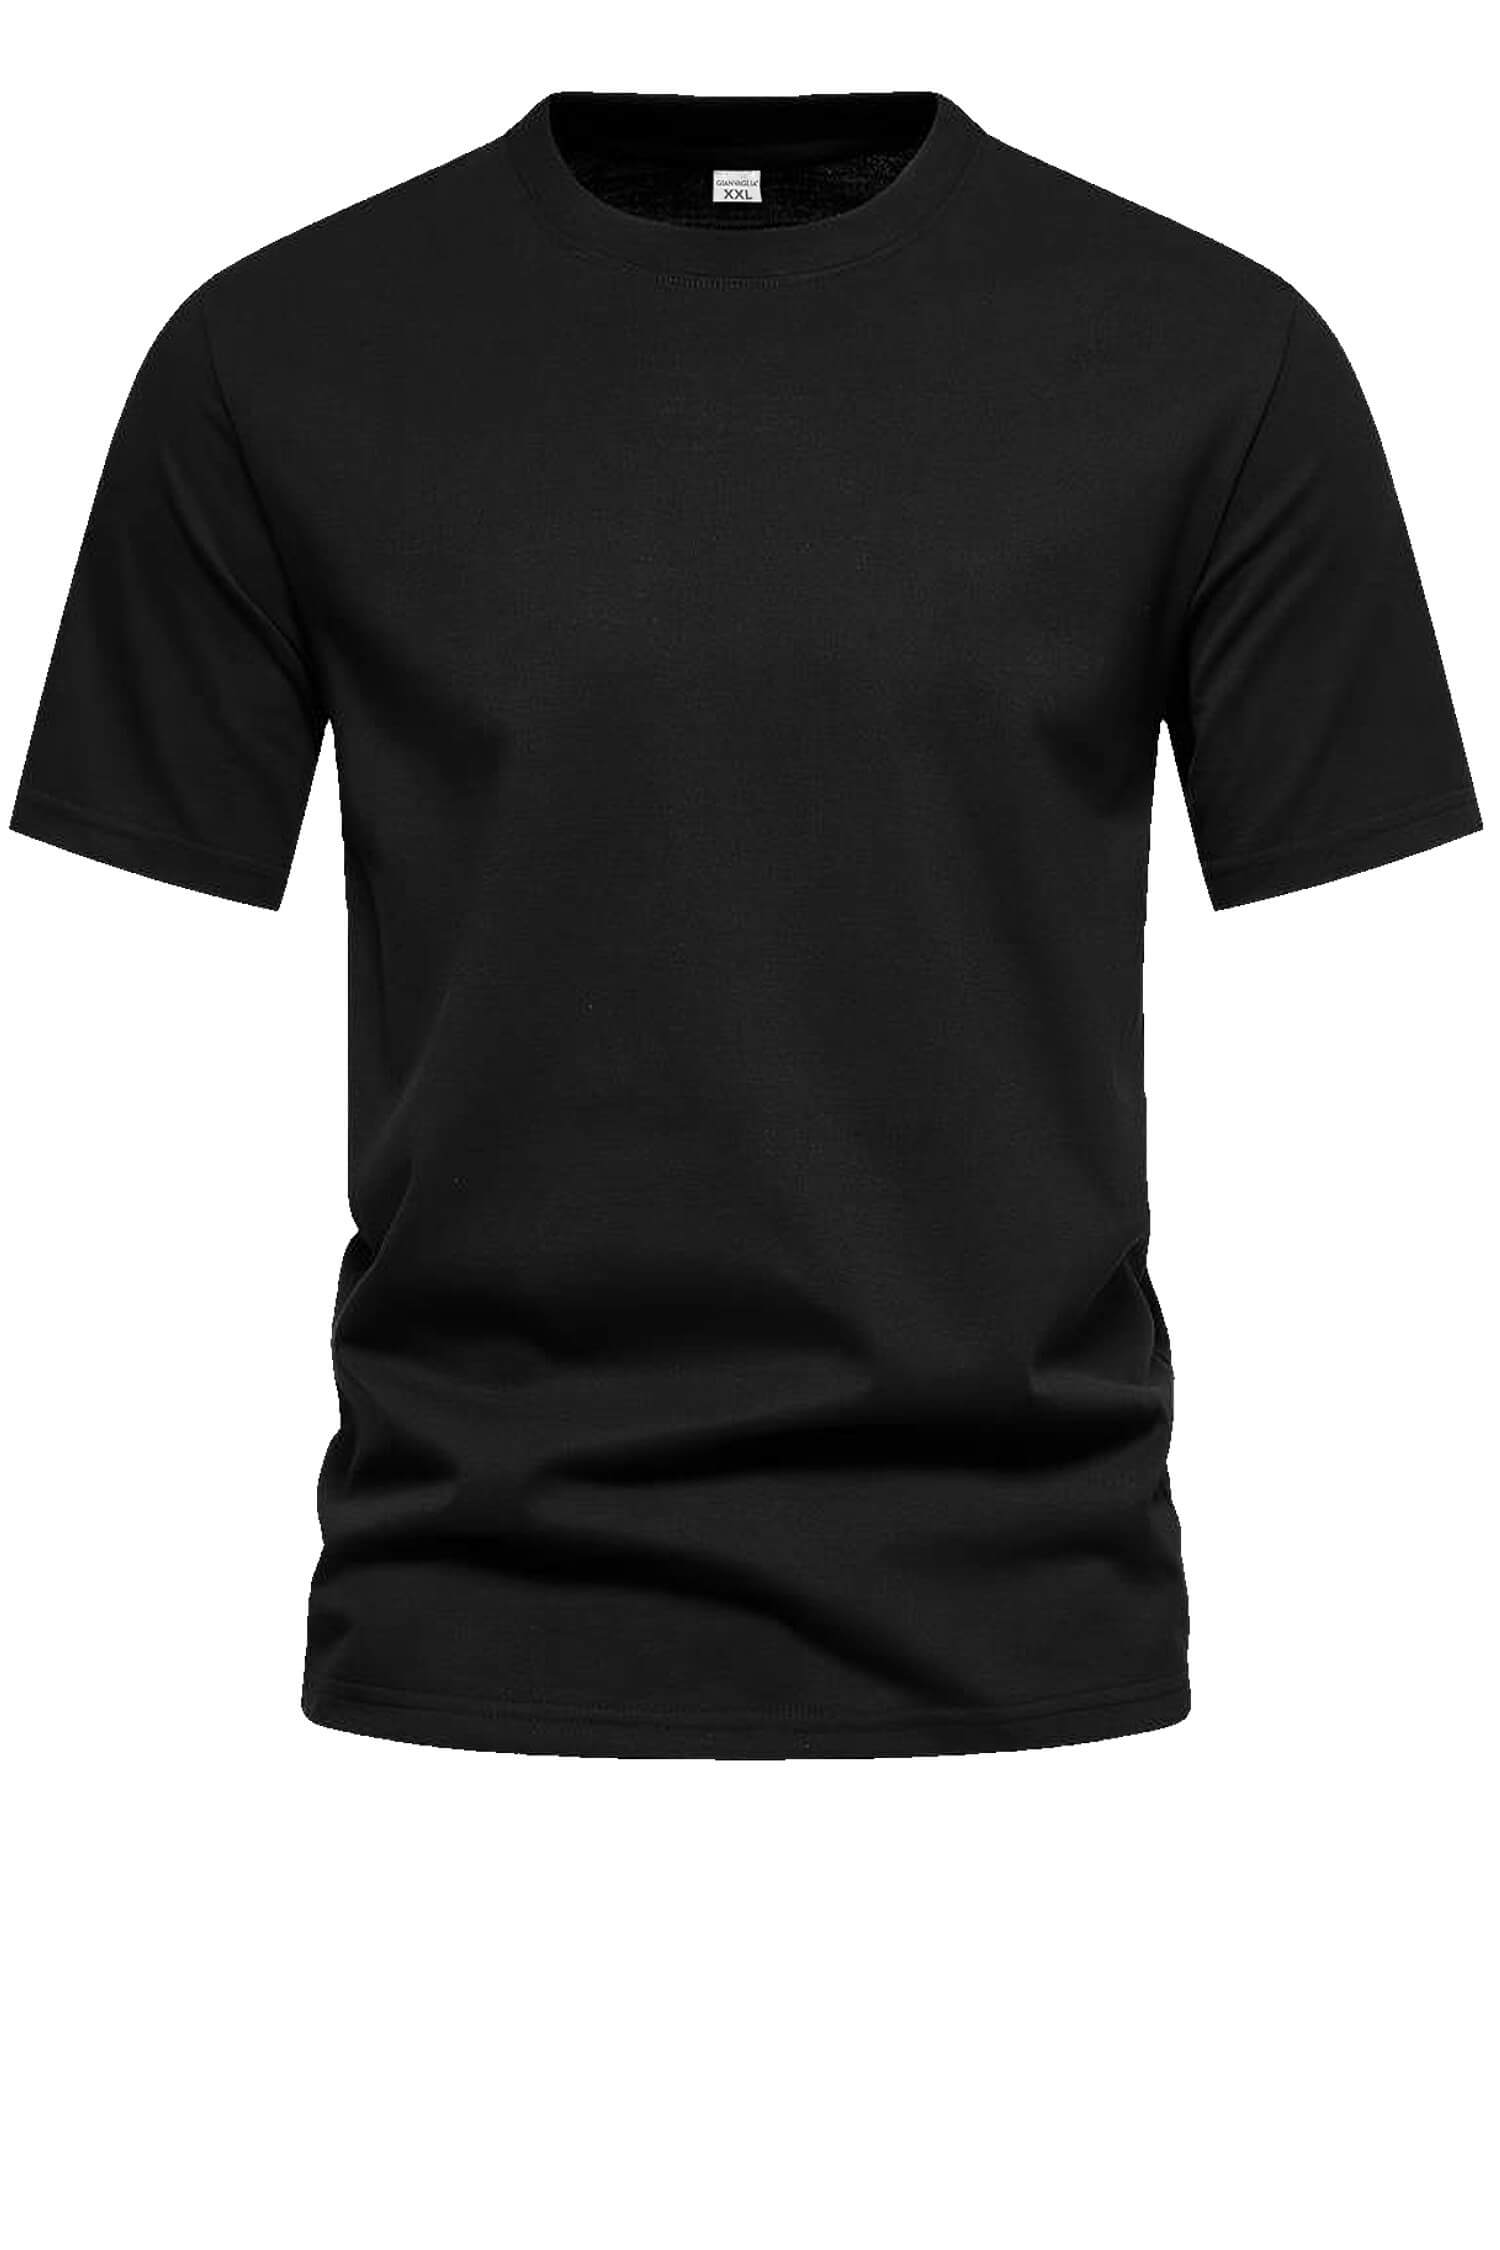 Bořek pánské klasické tričko TS-1006 XL černá